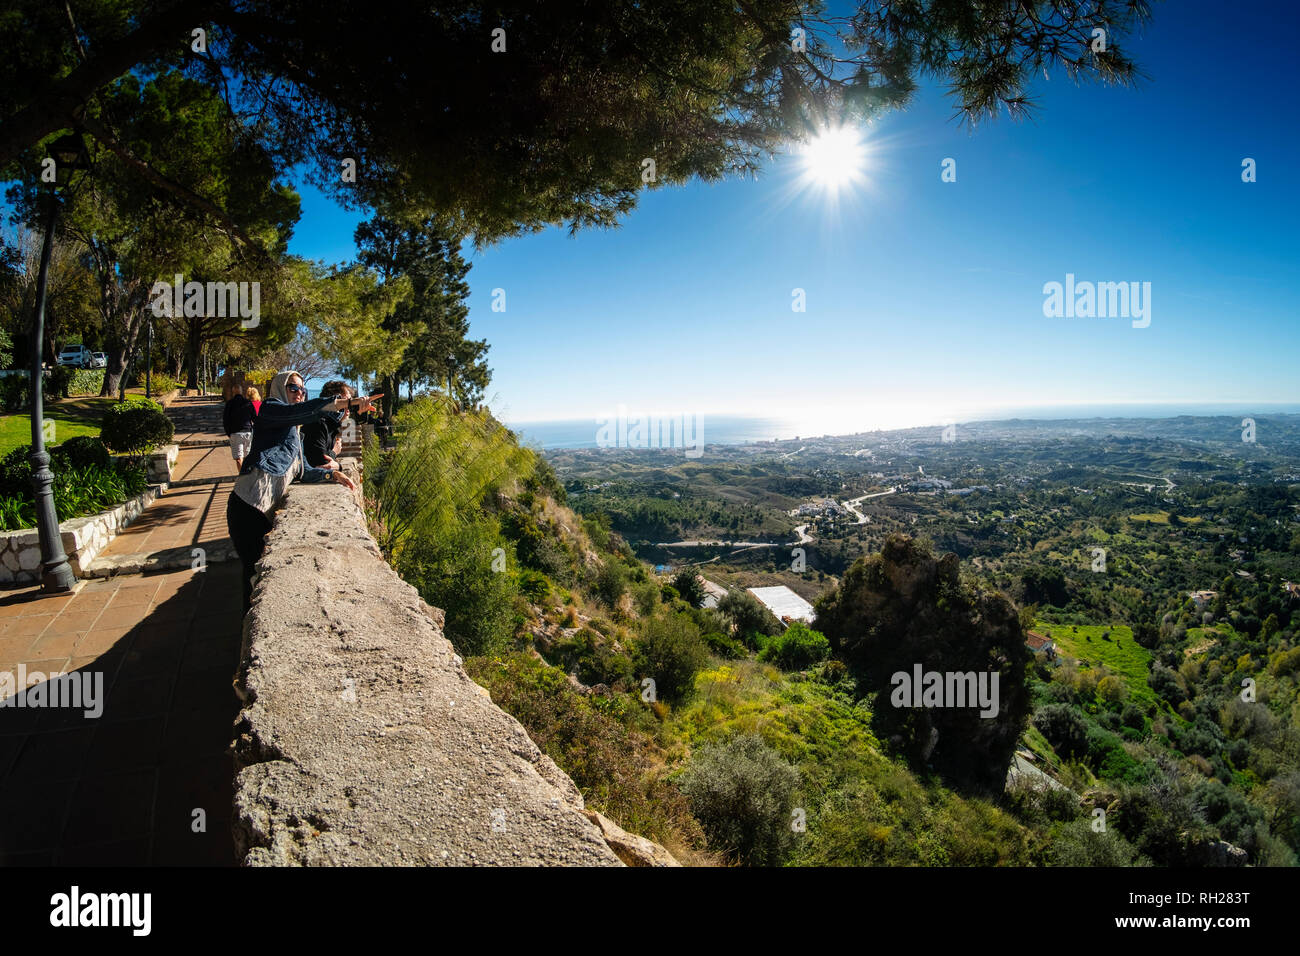 Vista panoramica del mare Mediterraneo e Fuengirola dai giardini del muro bianco, tipico villaggio di Mijas Pueblo. Costa del Sol, Malaga prov Foto Stock